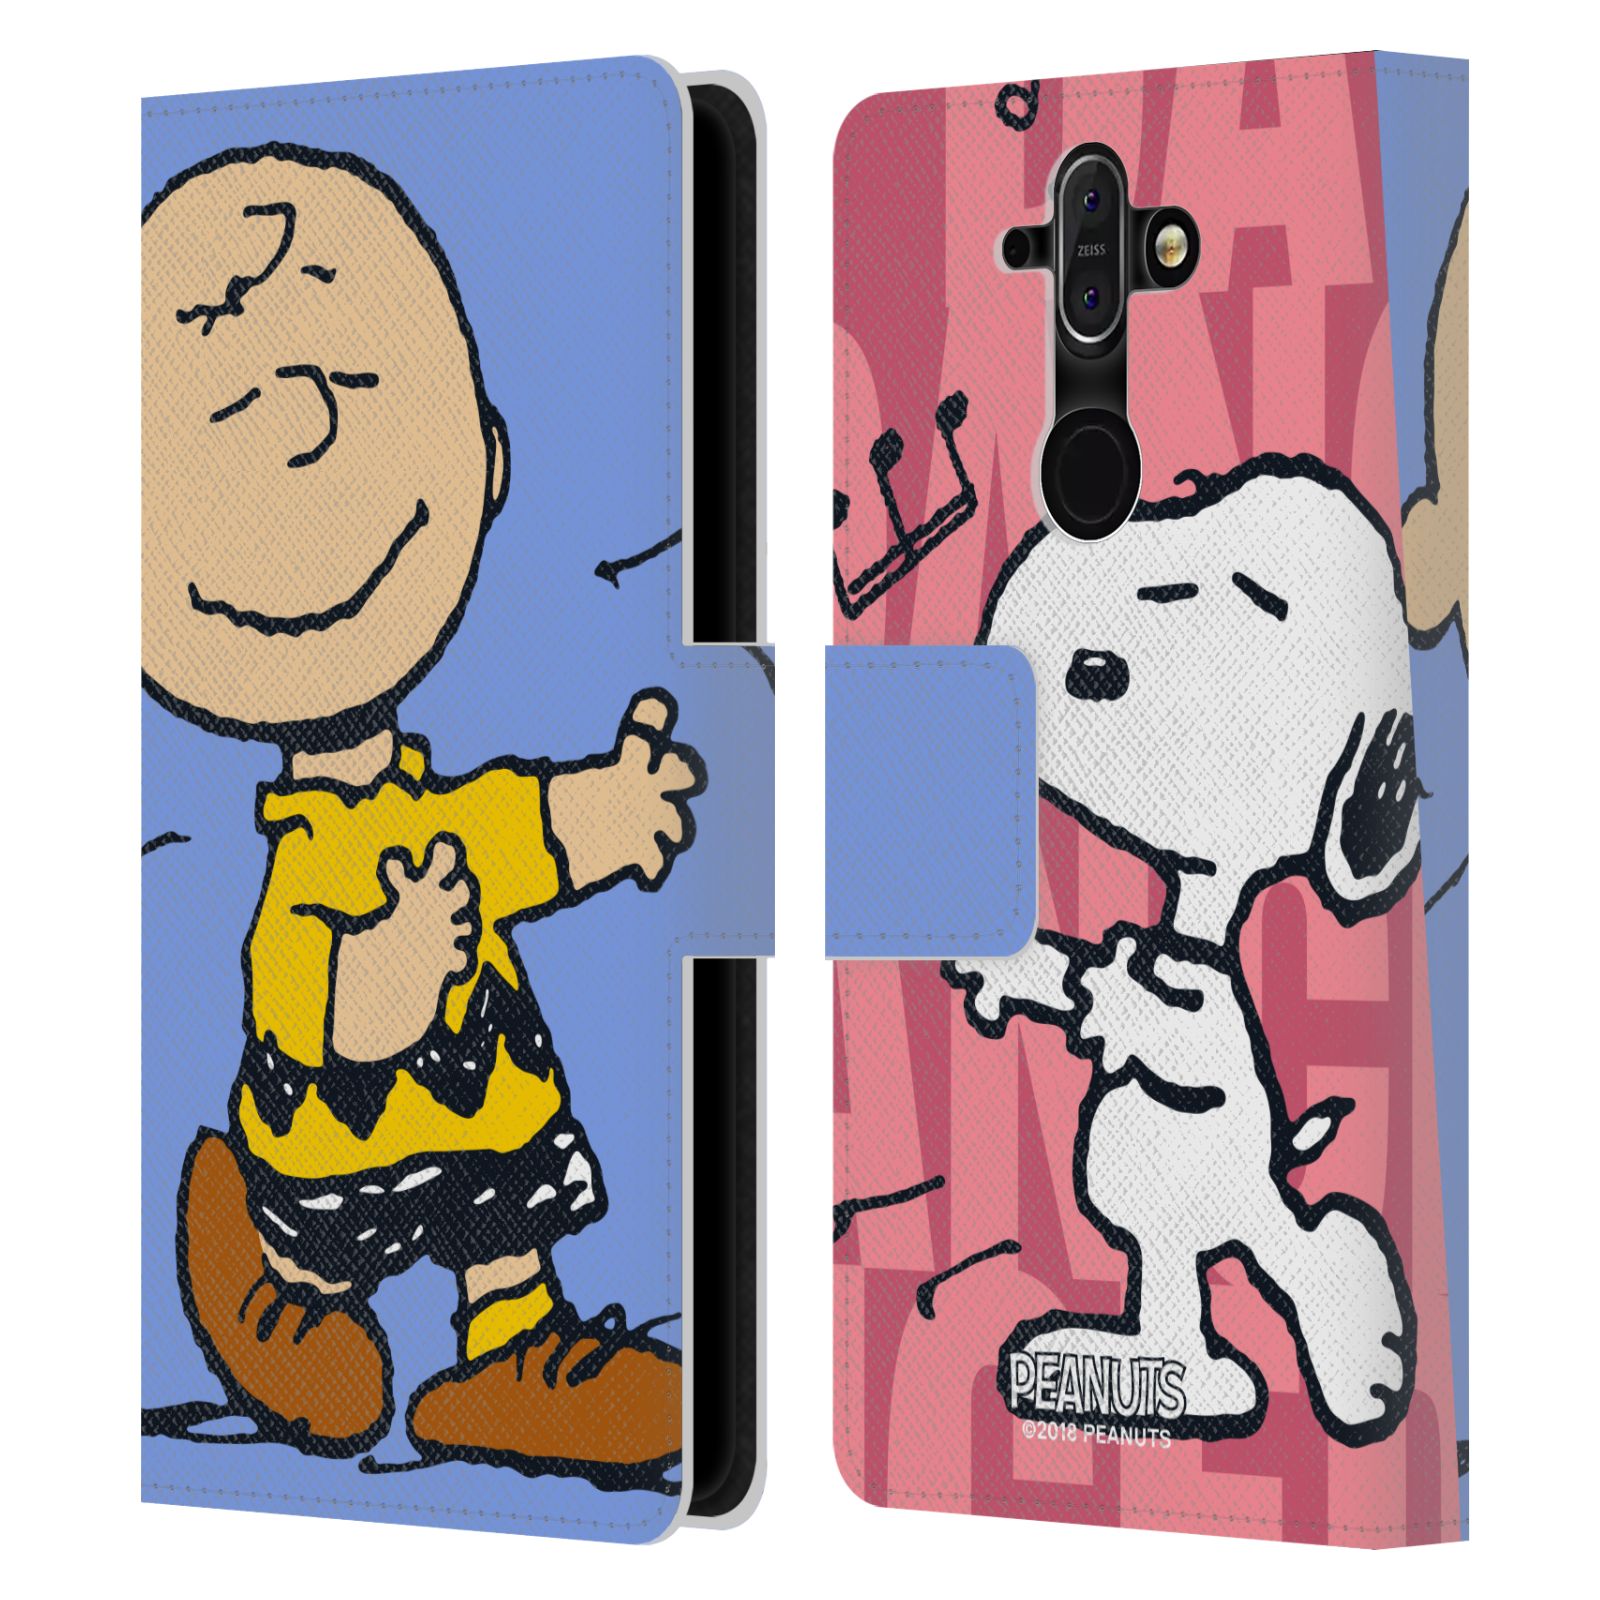 Pouzdro na mobil Nokia 8 Sirocco - Head Case - Peanuts - Snoopy a Charlie